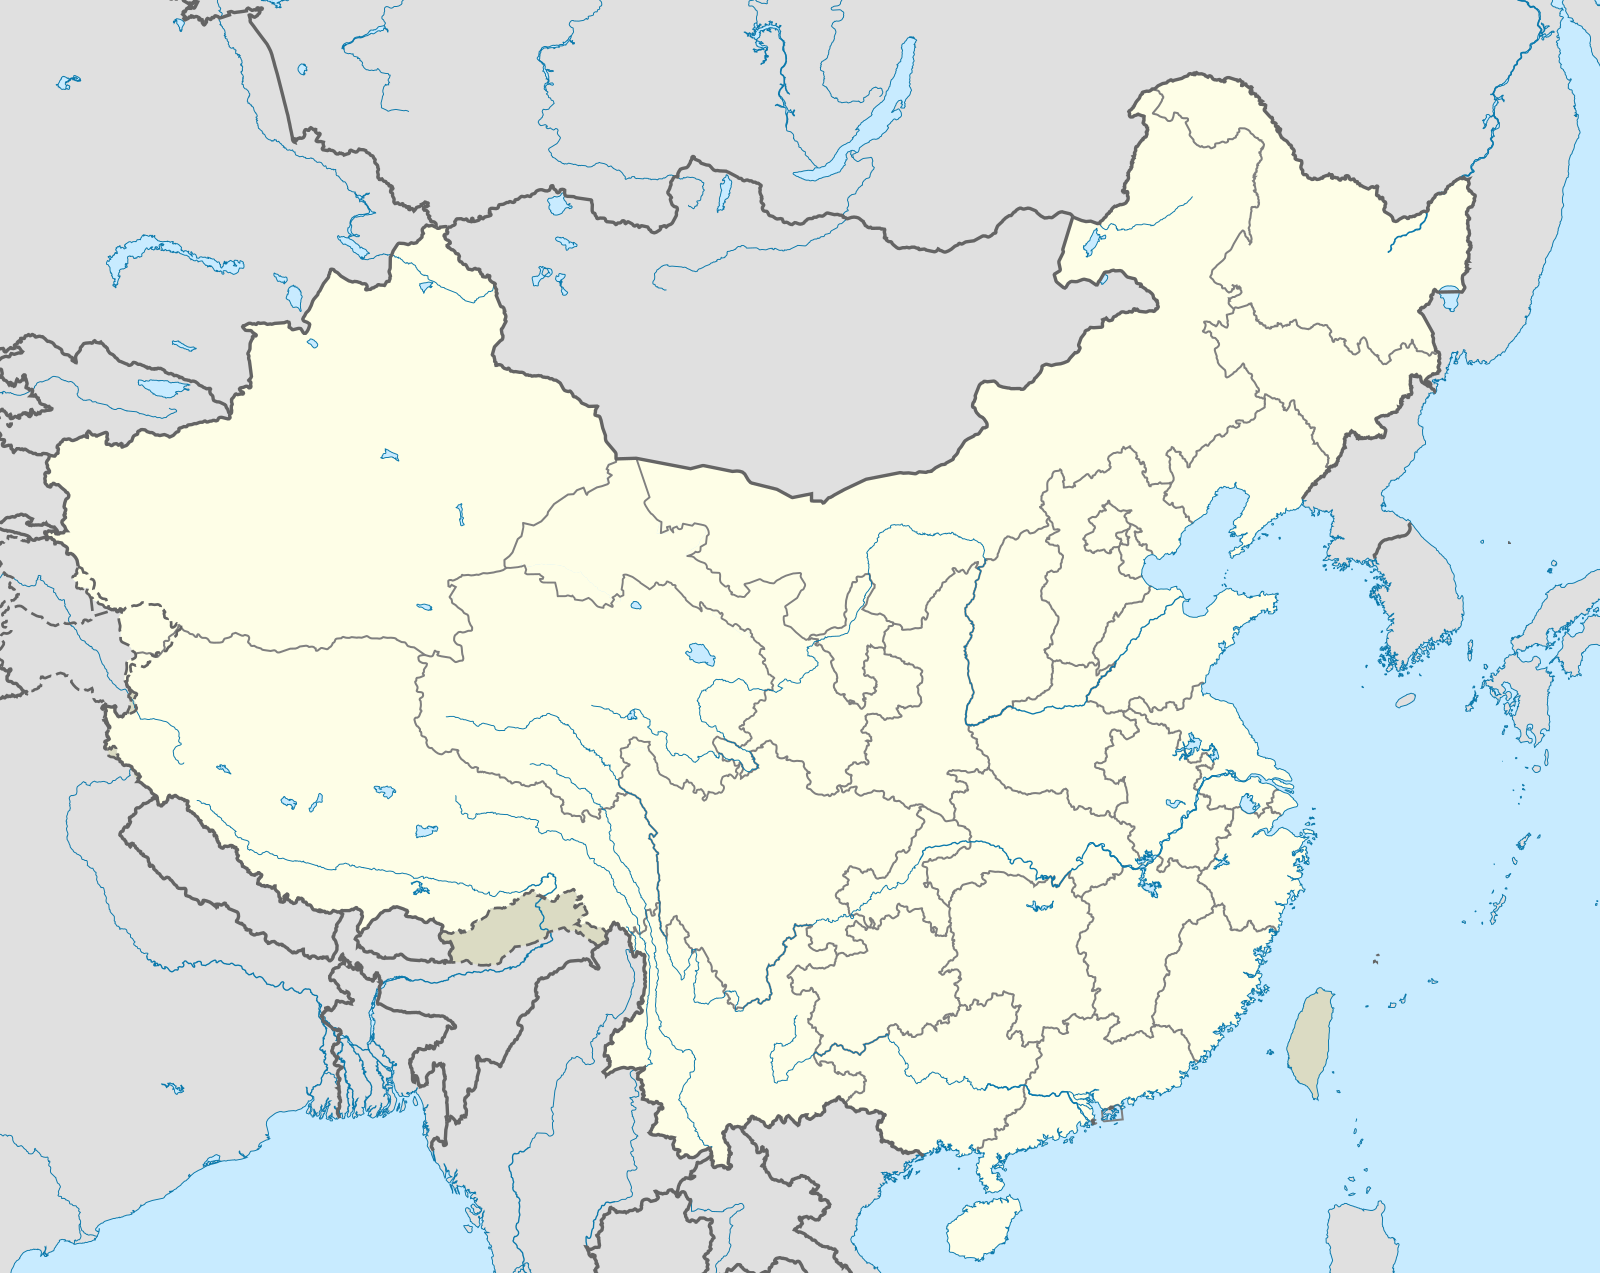 宜昌市在中国的位置